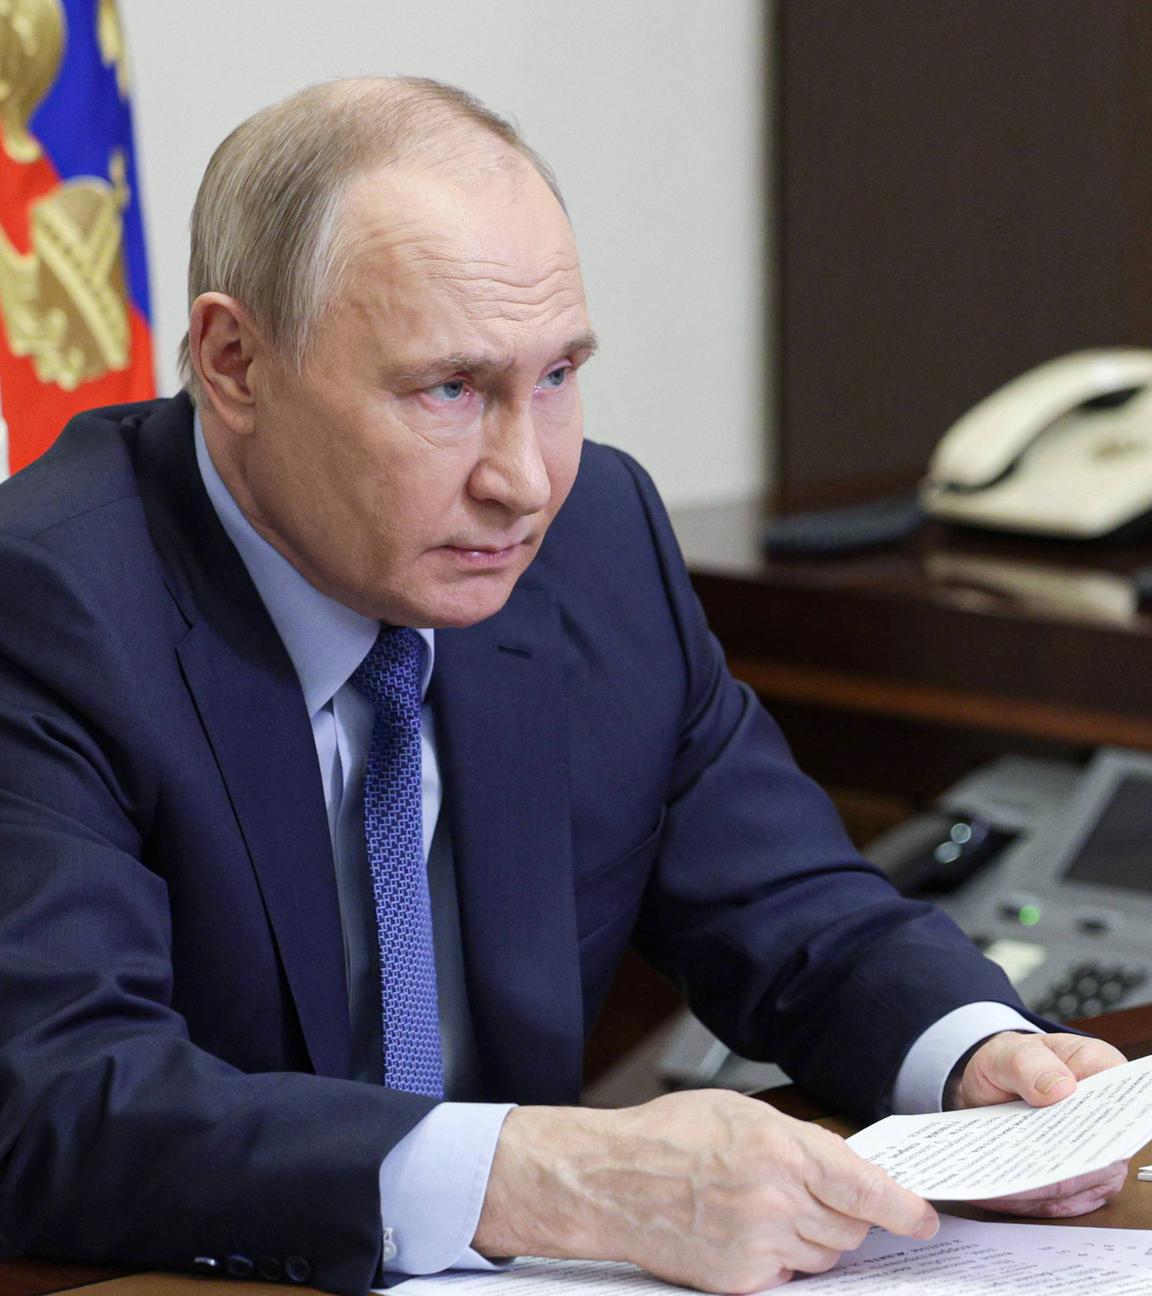 Der russische Präsident Wladimir Putin ist in seinem Büro in der Novo-Ogaryovo-Residenz